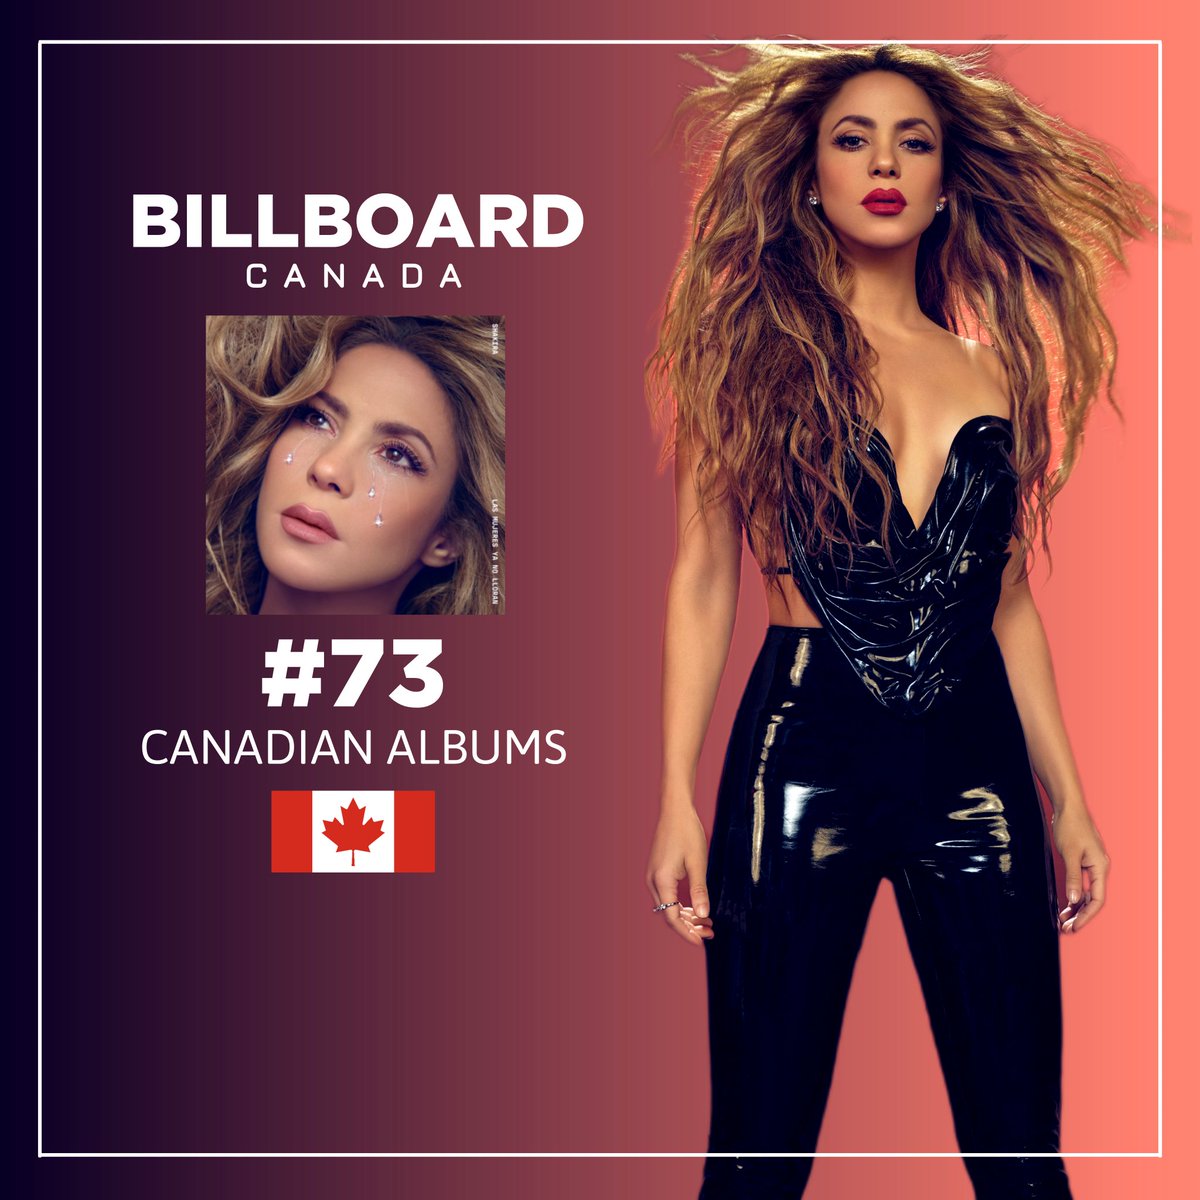 🇨🇦 | Las Mujeres Ya No Lloran de @shakira debuta en el puesto #73 en la lista semanal Canadian Albums de @billboard.

Source: @billboardca

@billboardcharts @SonyMusicLatin
#LasMujeresYaNoLloran #ShakiraCharts